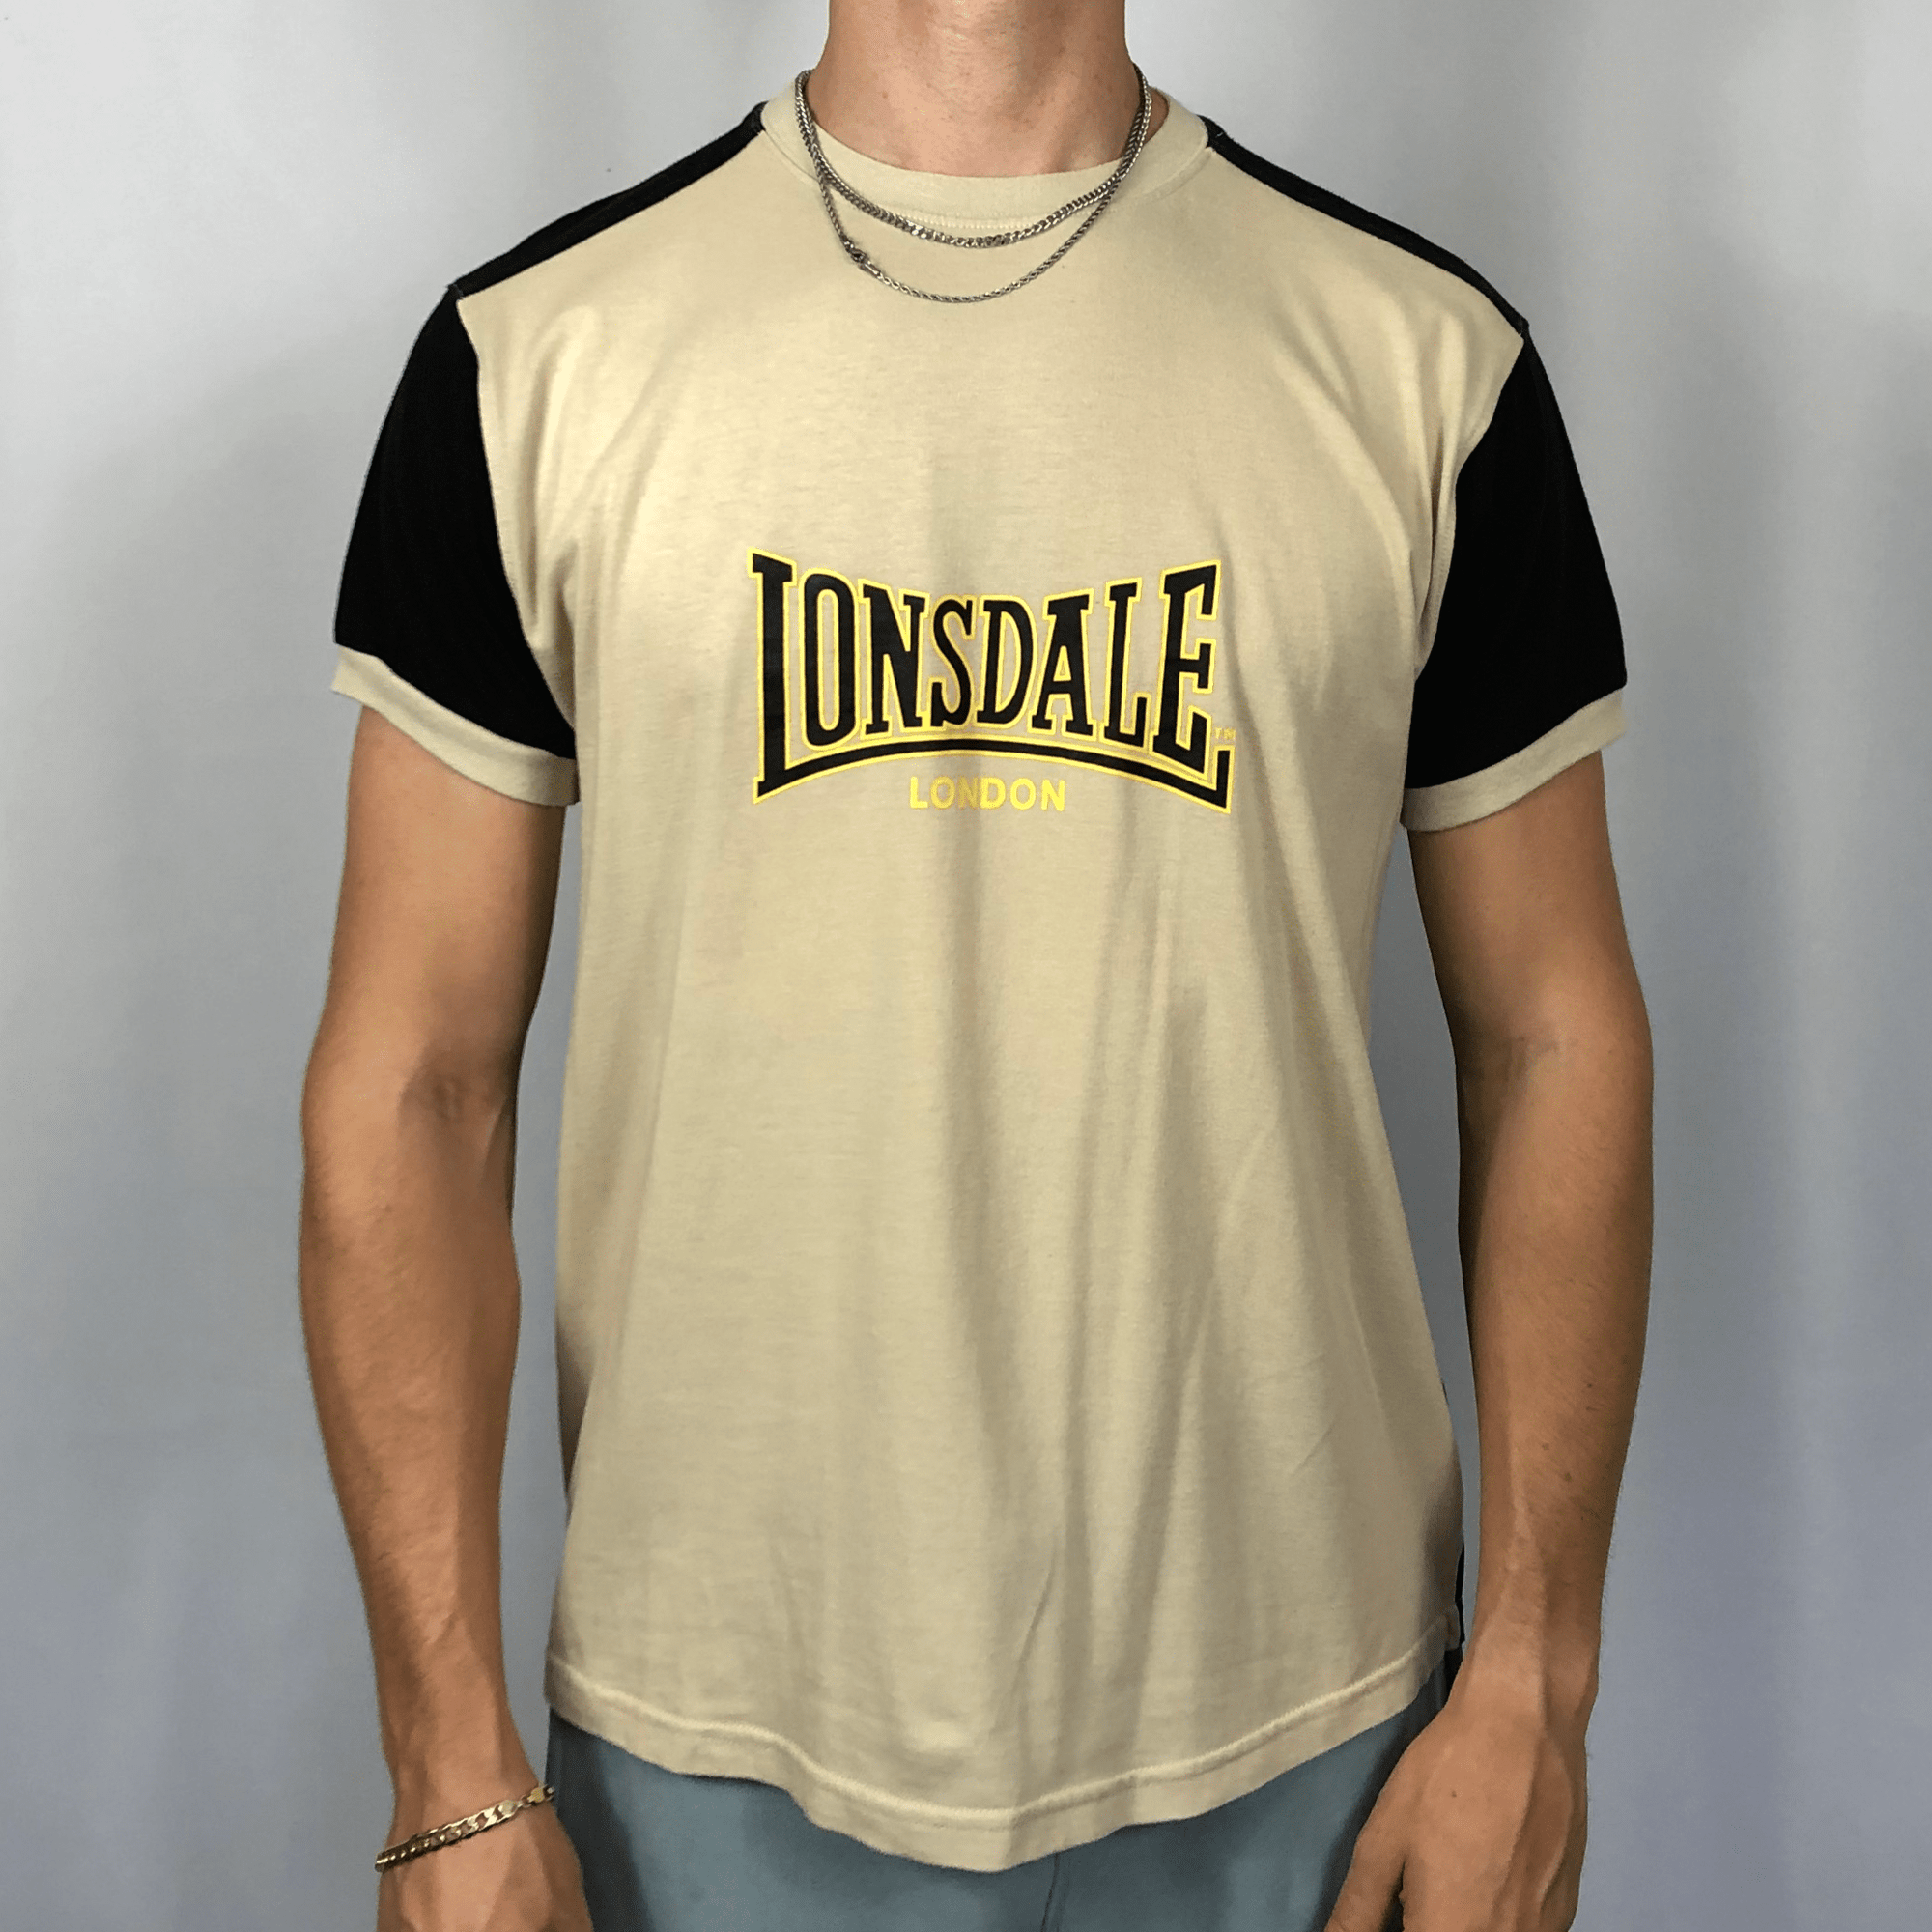 Vintage Lonsdale Spellout T-Shirt - Medium - Vintique Clothing